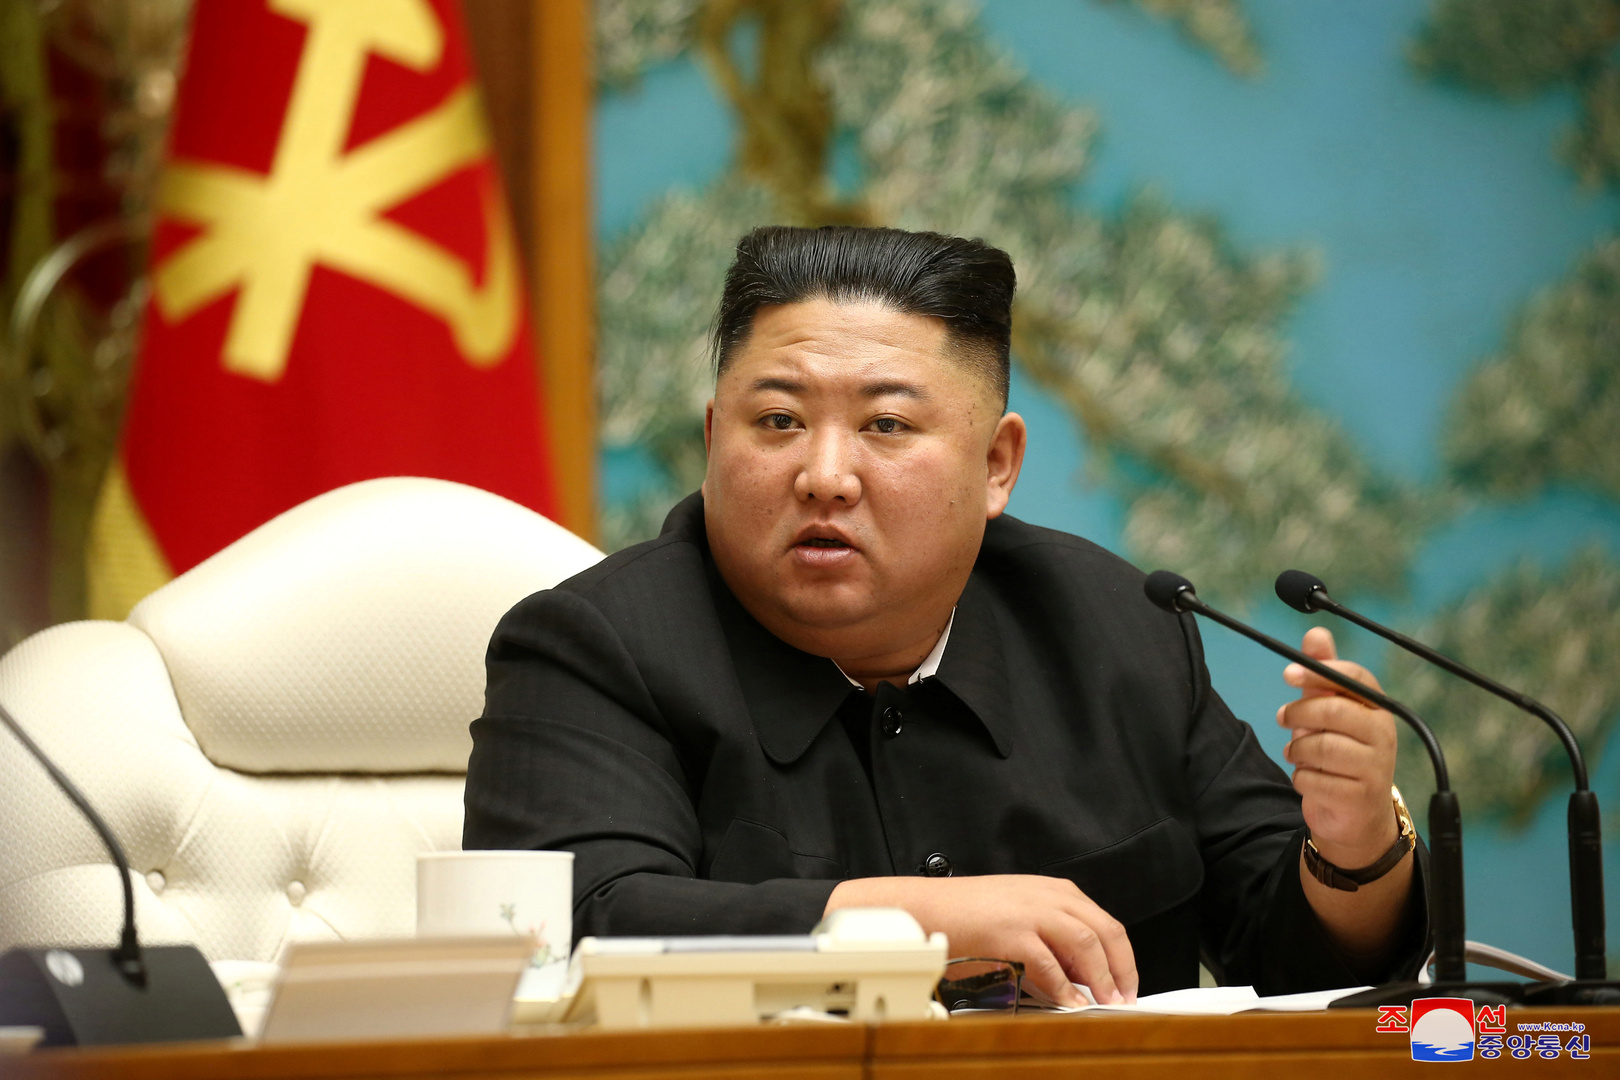 سيئول: كوريا الشمالية أعدمت مسؤولين وحظرت الصيد وأغلقت بيونغ يانغ بسبب كورونا